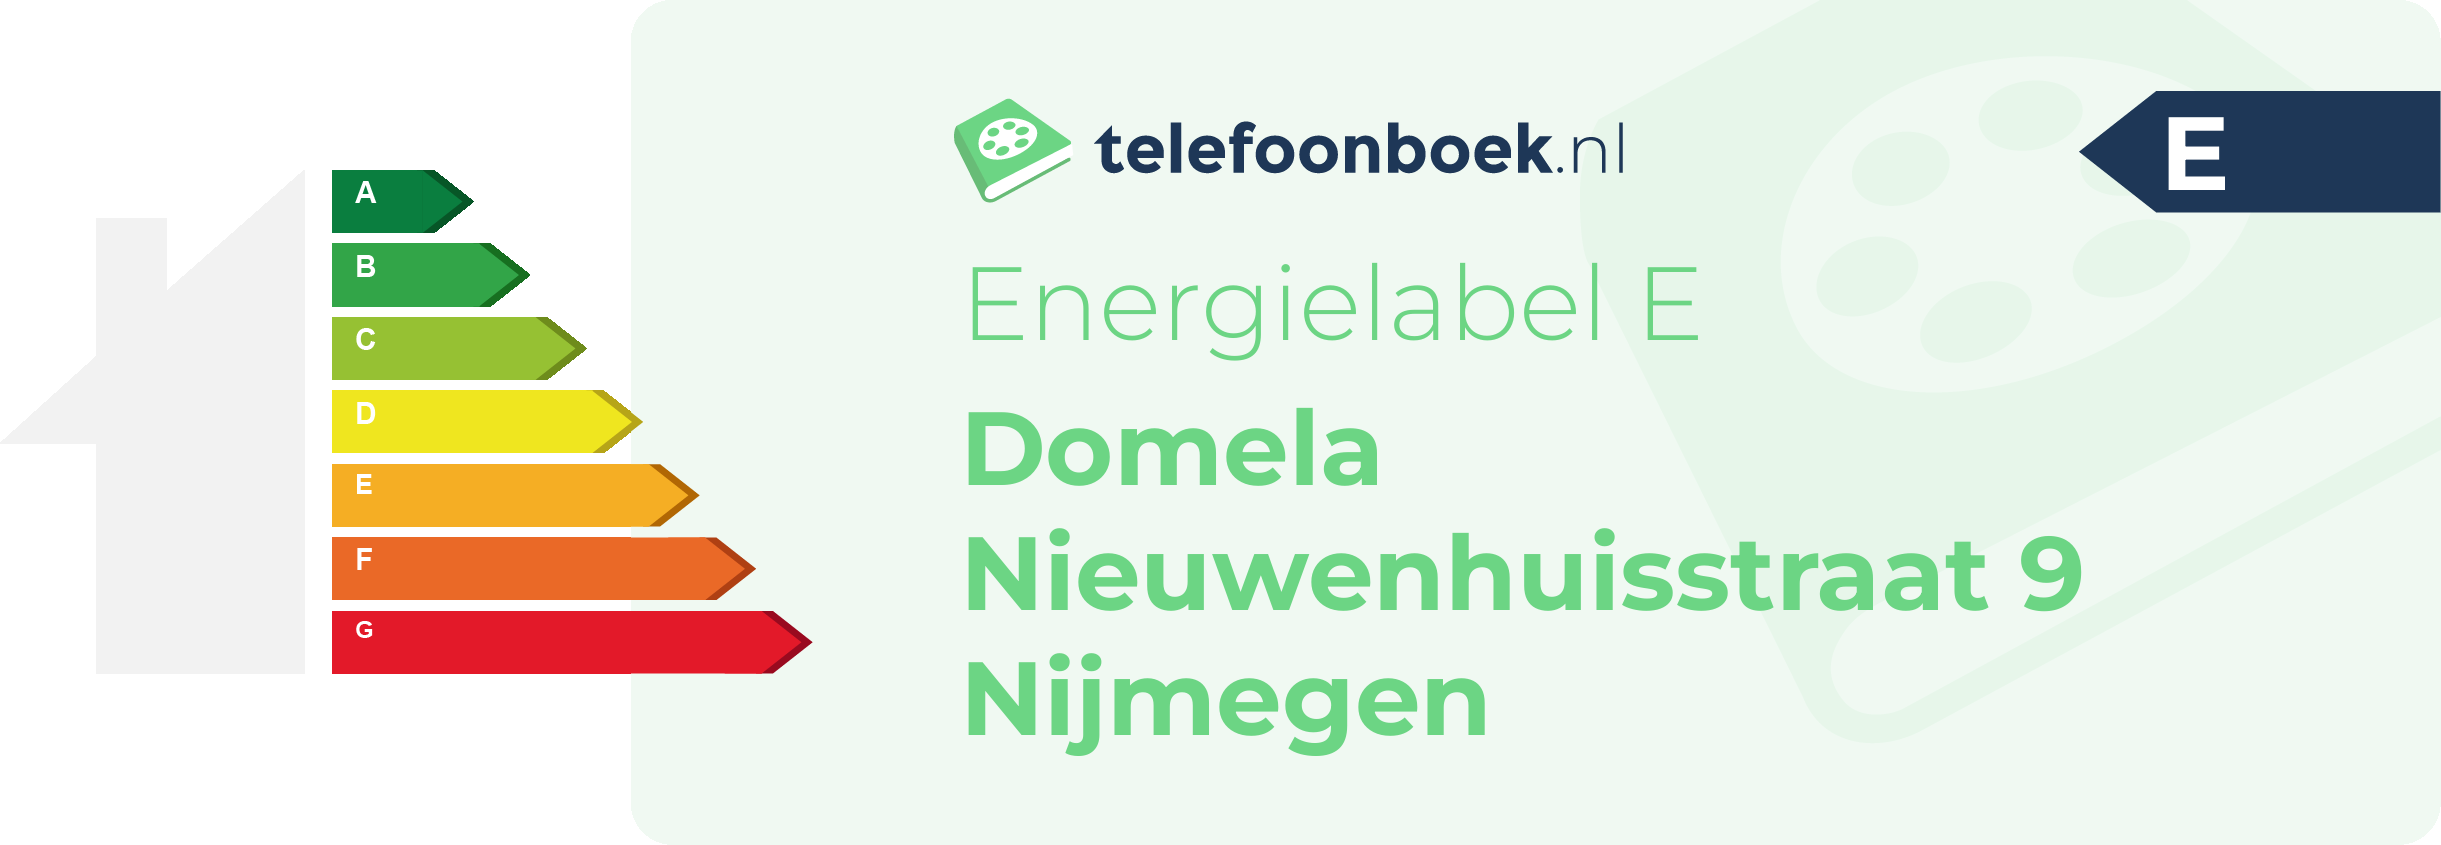 Energielabel Domela Nieuwenhuisstraat 9 Nijmegen